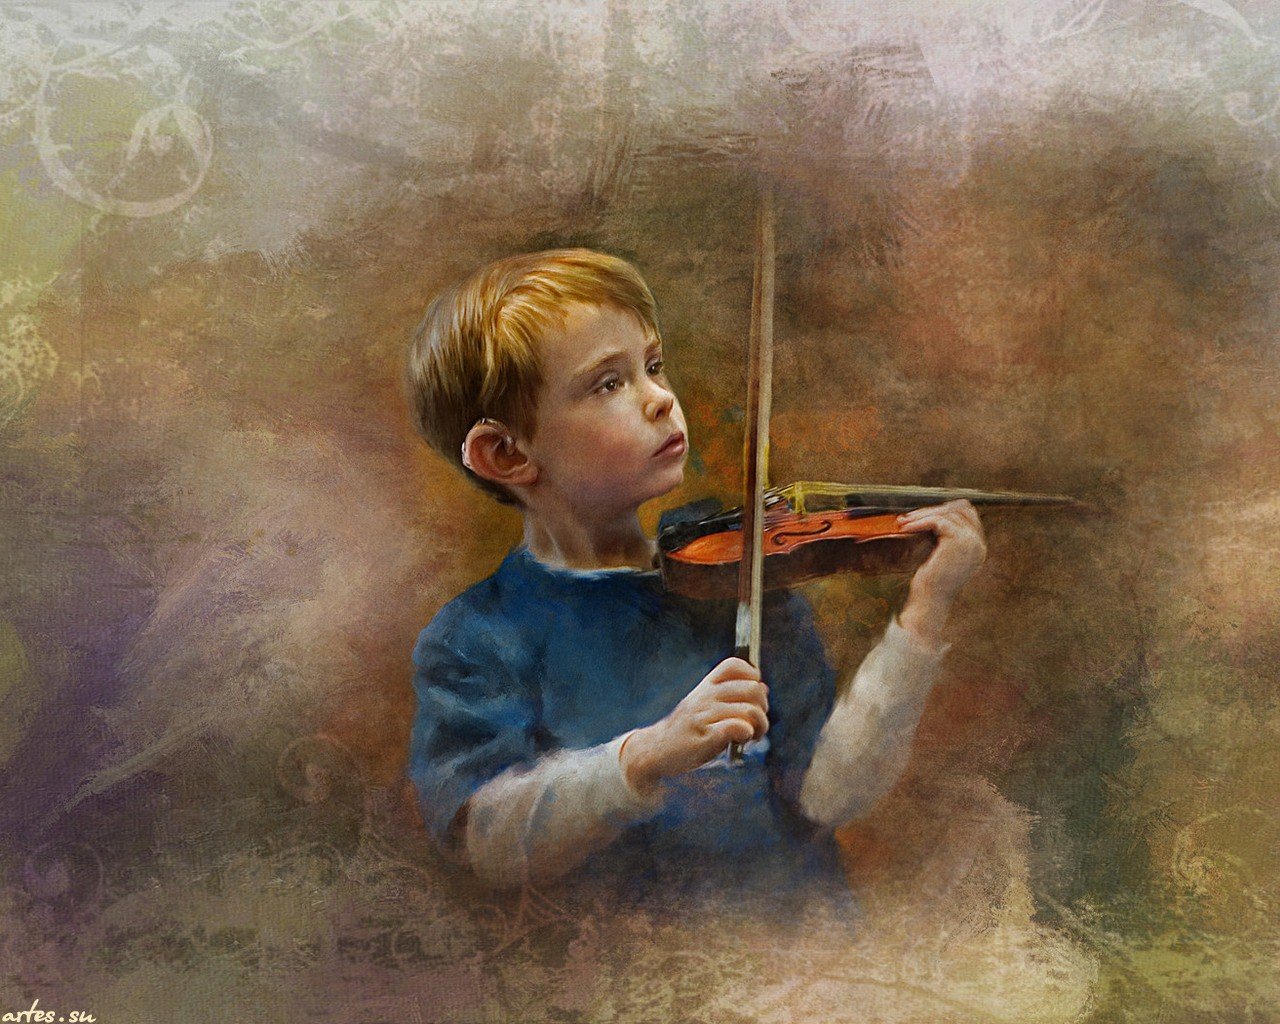 Запиликает на скрипке. Richard Ramsey скрипач. Мальчик со скрипкой.